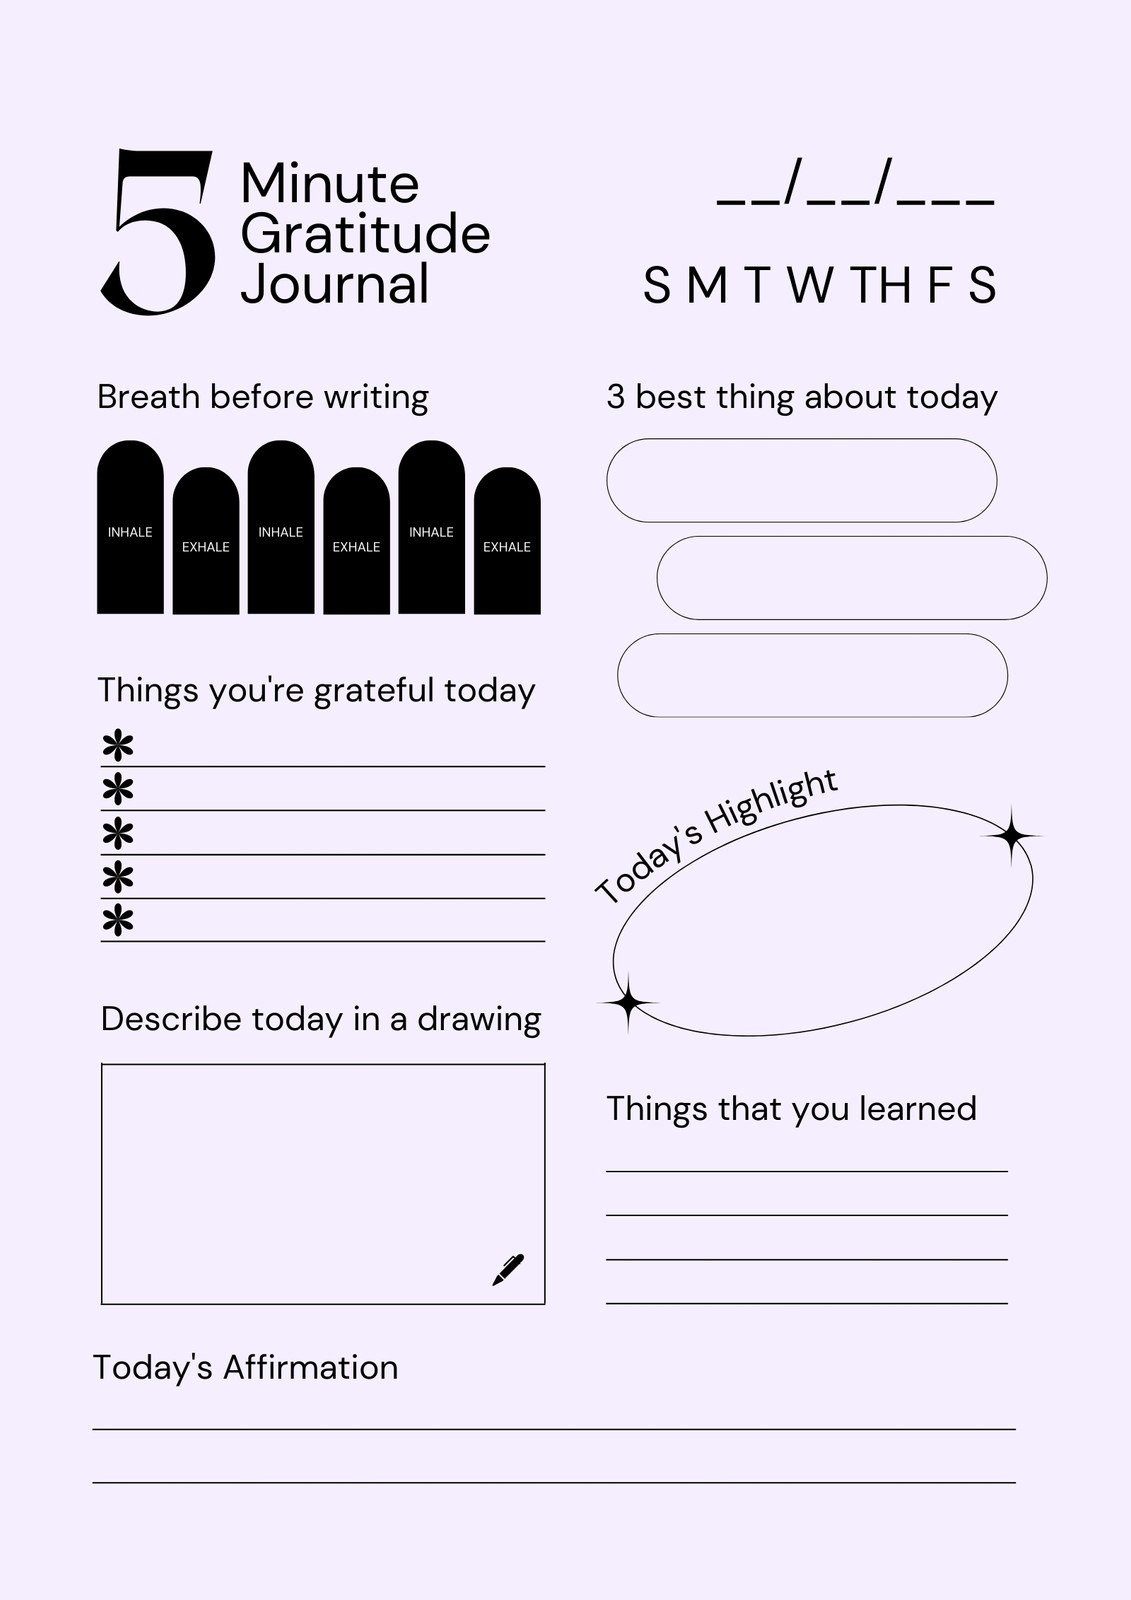 Free Editable And Printable Journal Templates | Canva - Free Online Printable Journal